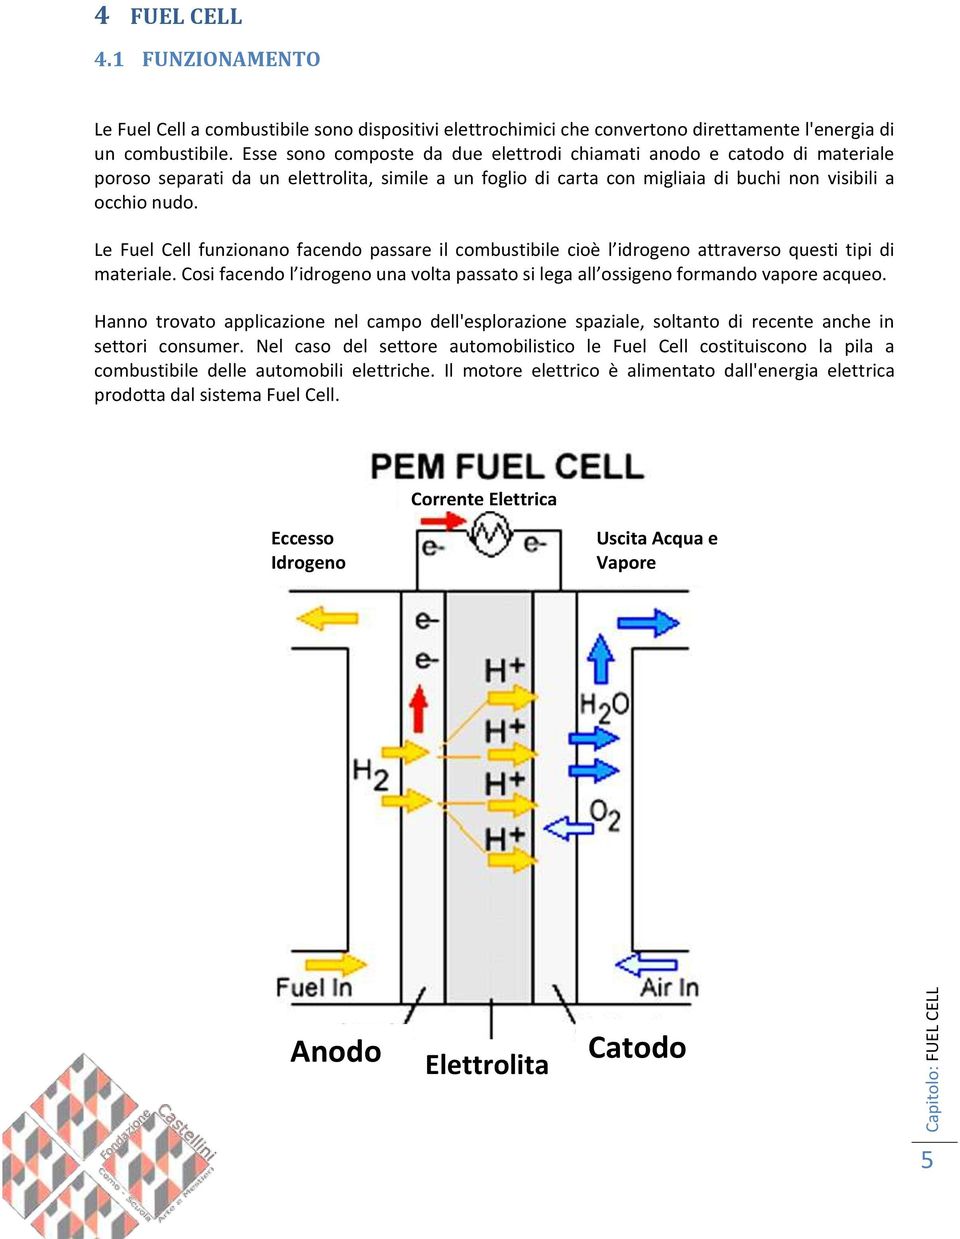 Le Fuel Cell funzionano facendo passare il combustibile cioè l idrogeno attraverso questi tipi di materiale. Cosi facendo l idrogeno una volta passato si lega all ossigeno formando vapore acqueo.